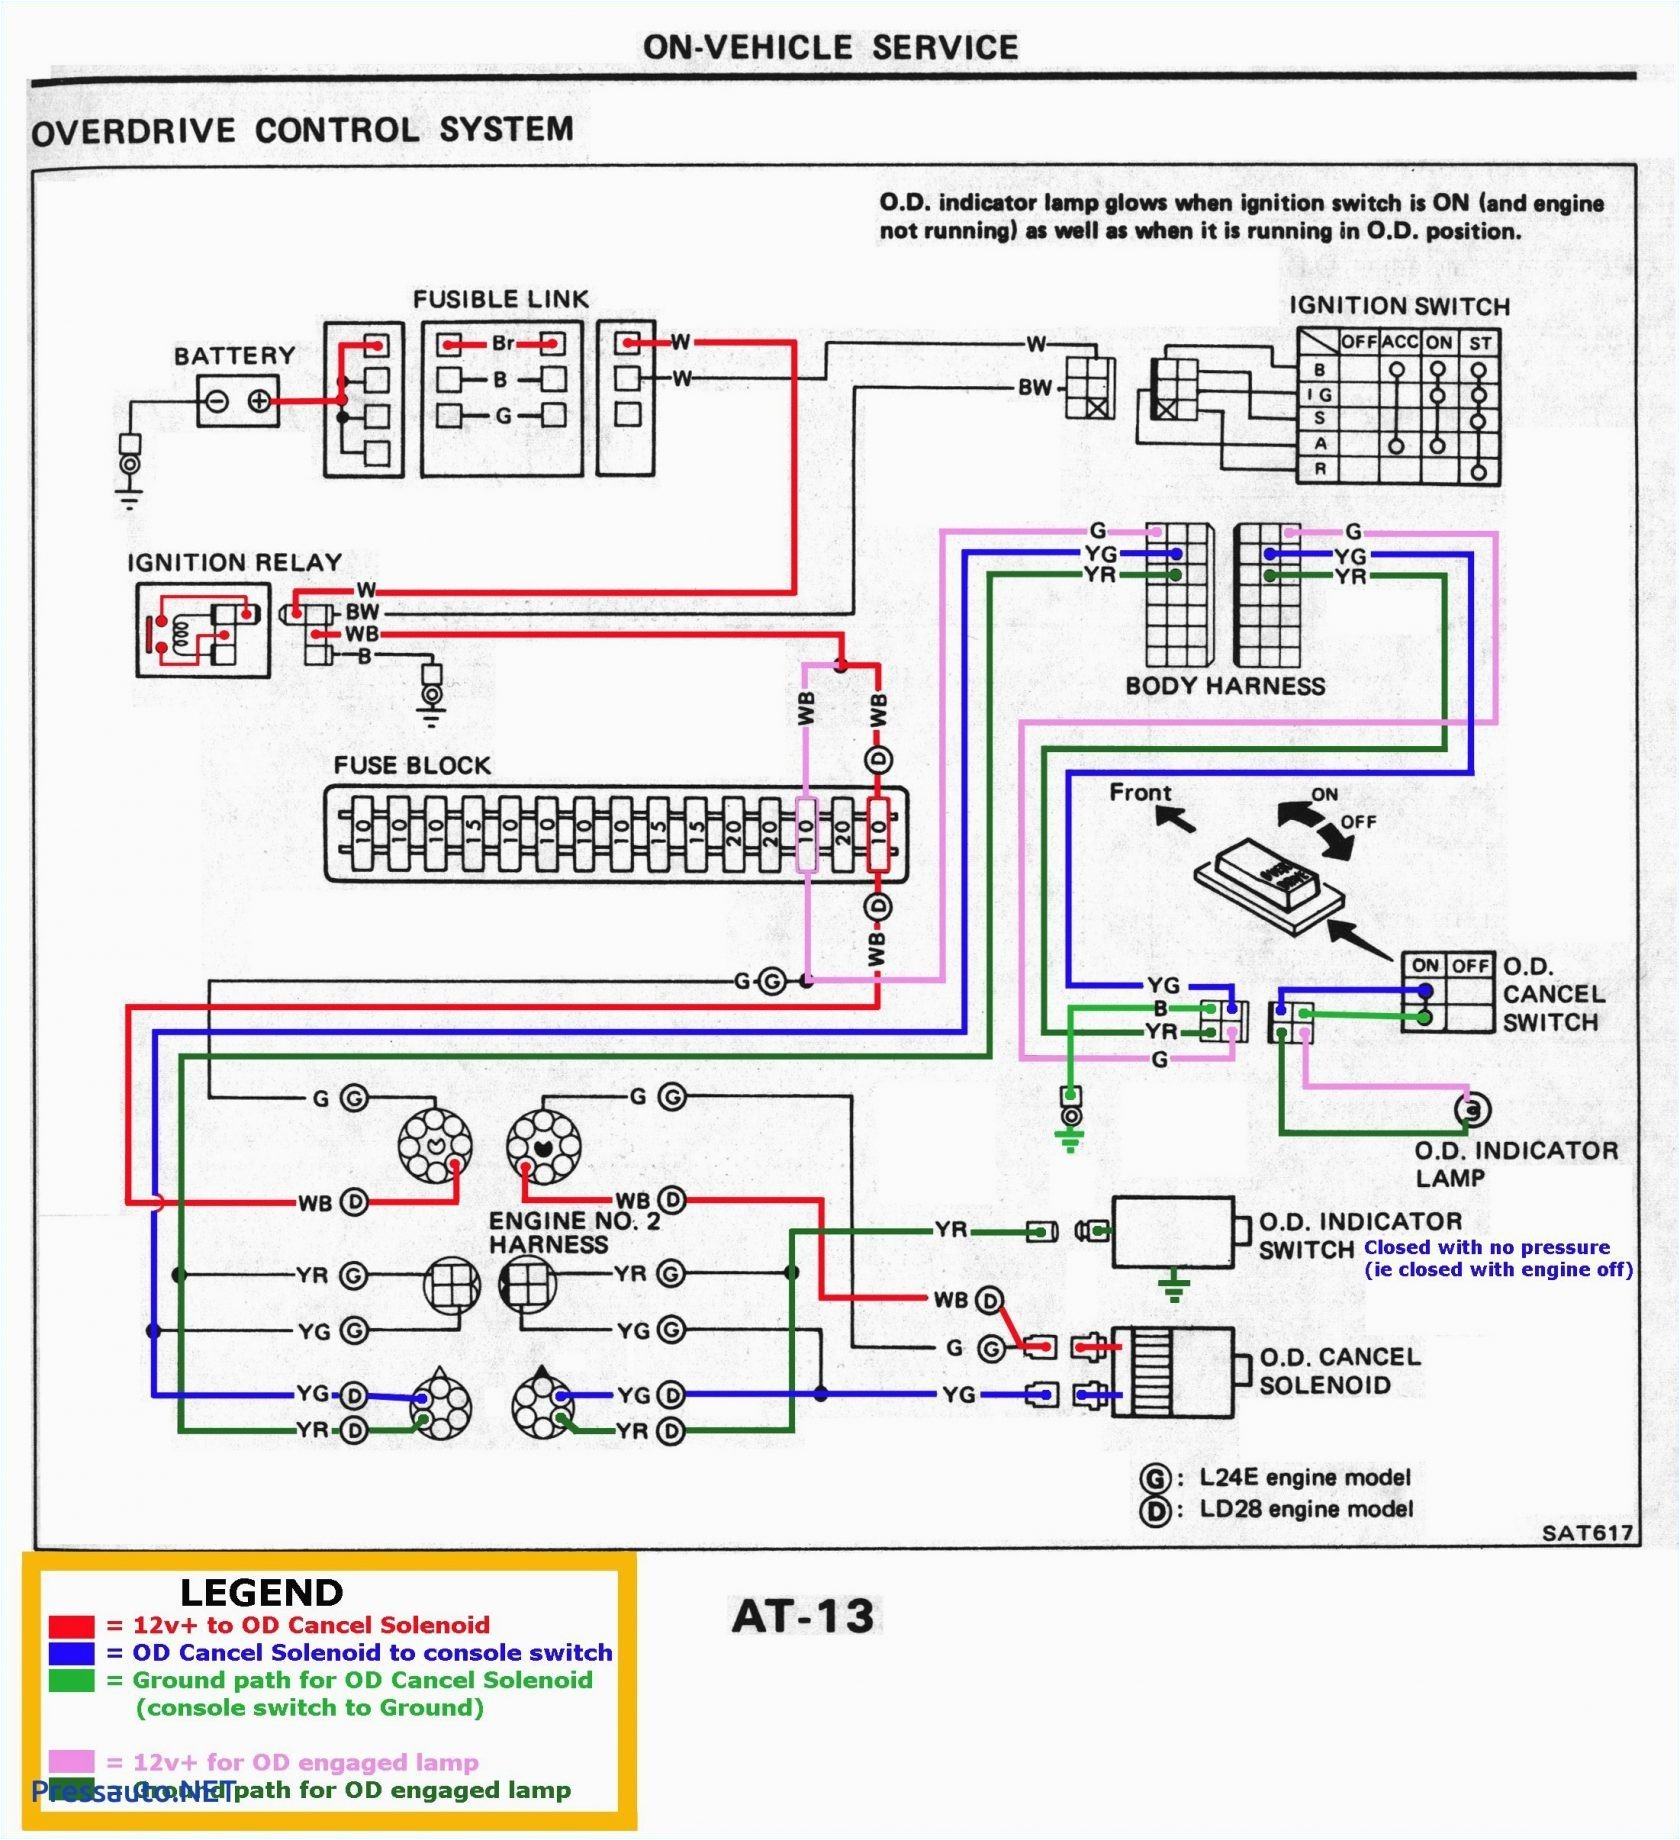 Pajero Wiring Diagram Pdf Wiring Diagram Mitsubishi Space Star Wiring Diagram toolbox